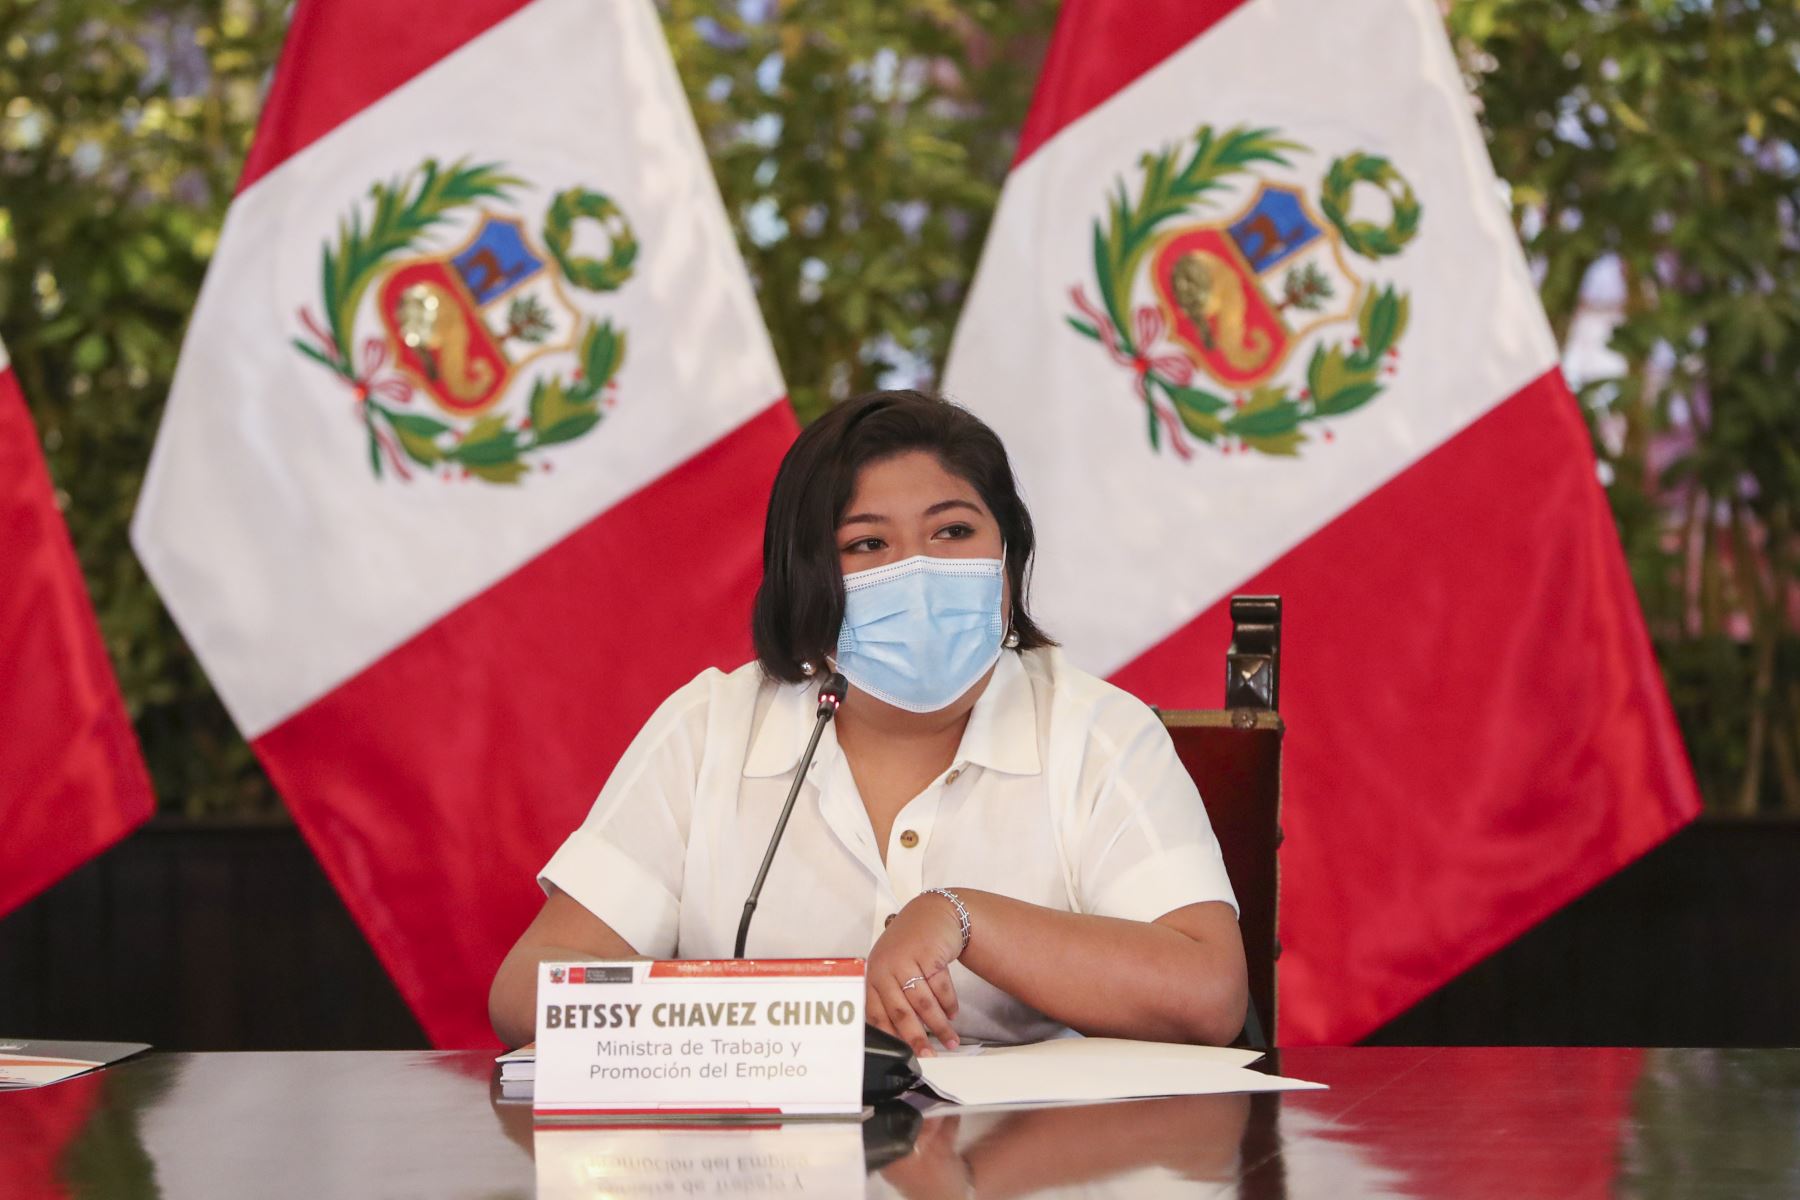 El Ministerio de Trabajo se convierte en la agencia de empleos de los egresados de la universidad de Betssy Chávez